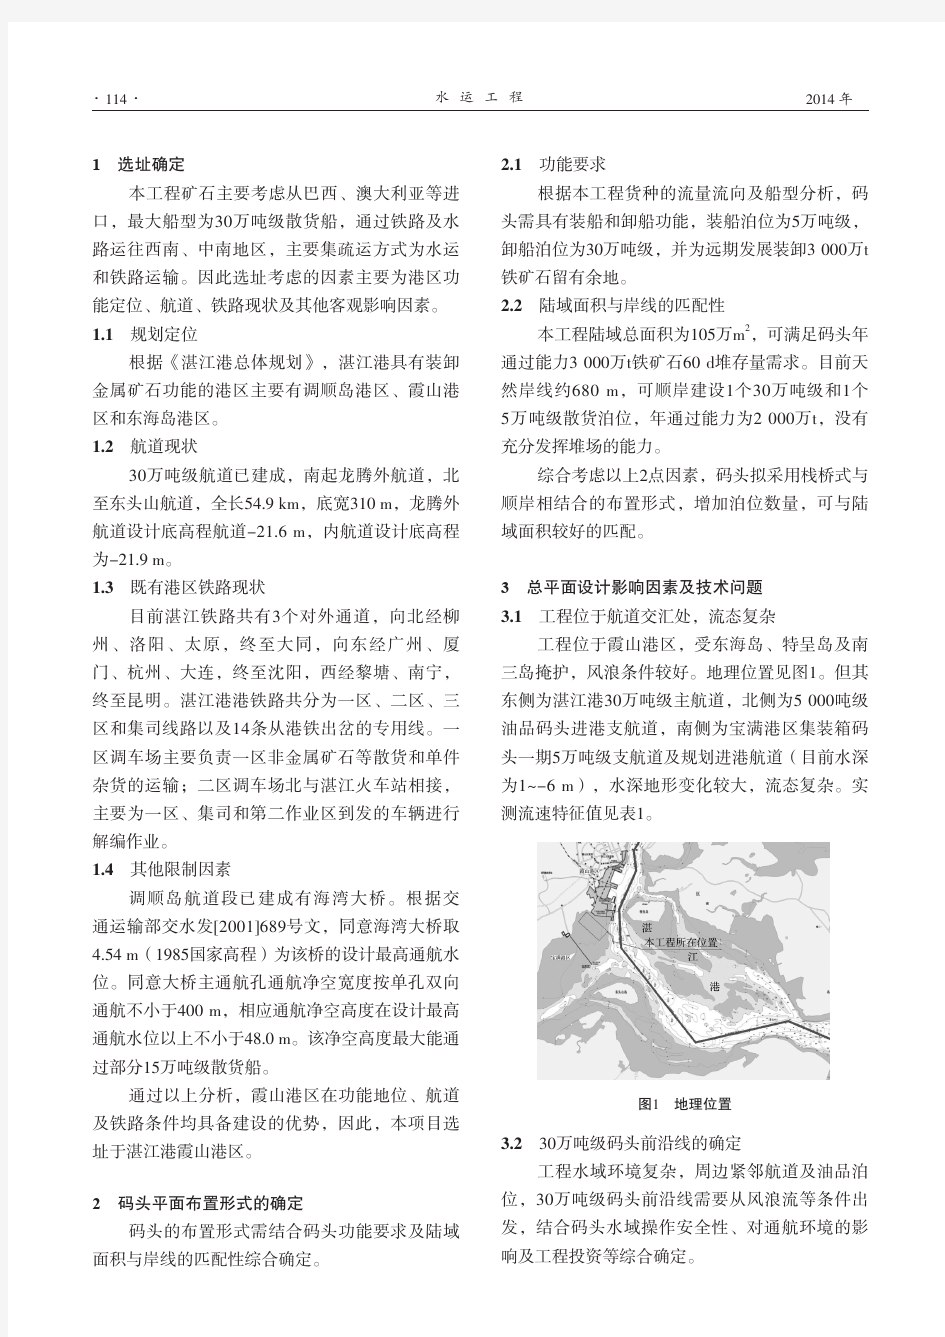 湛江港霞山港区散货码头工程总平面布置-2013.11.12